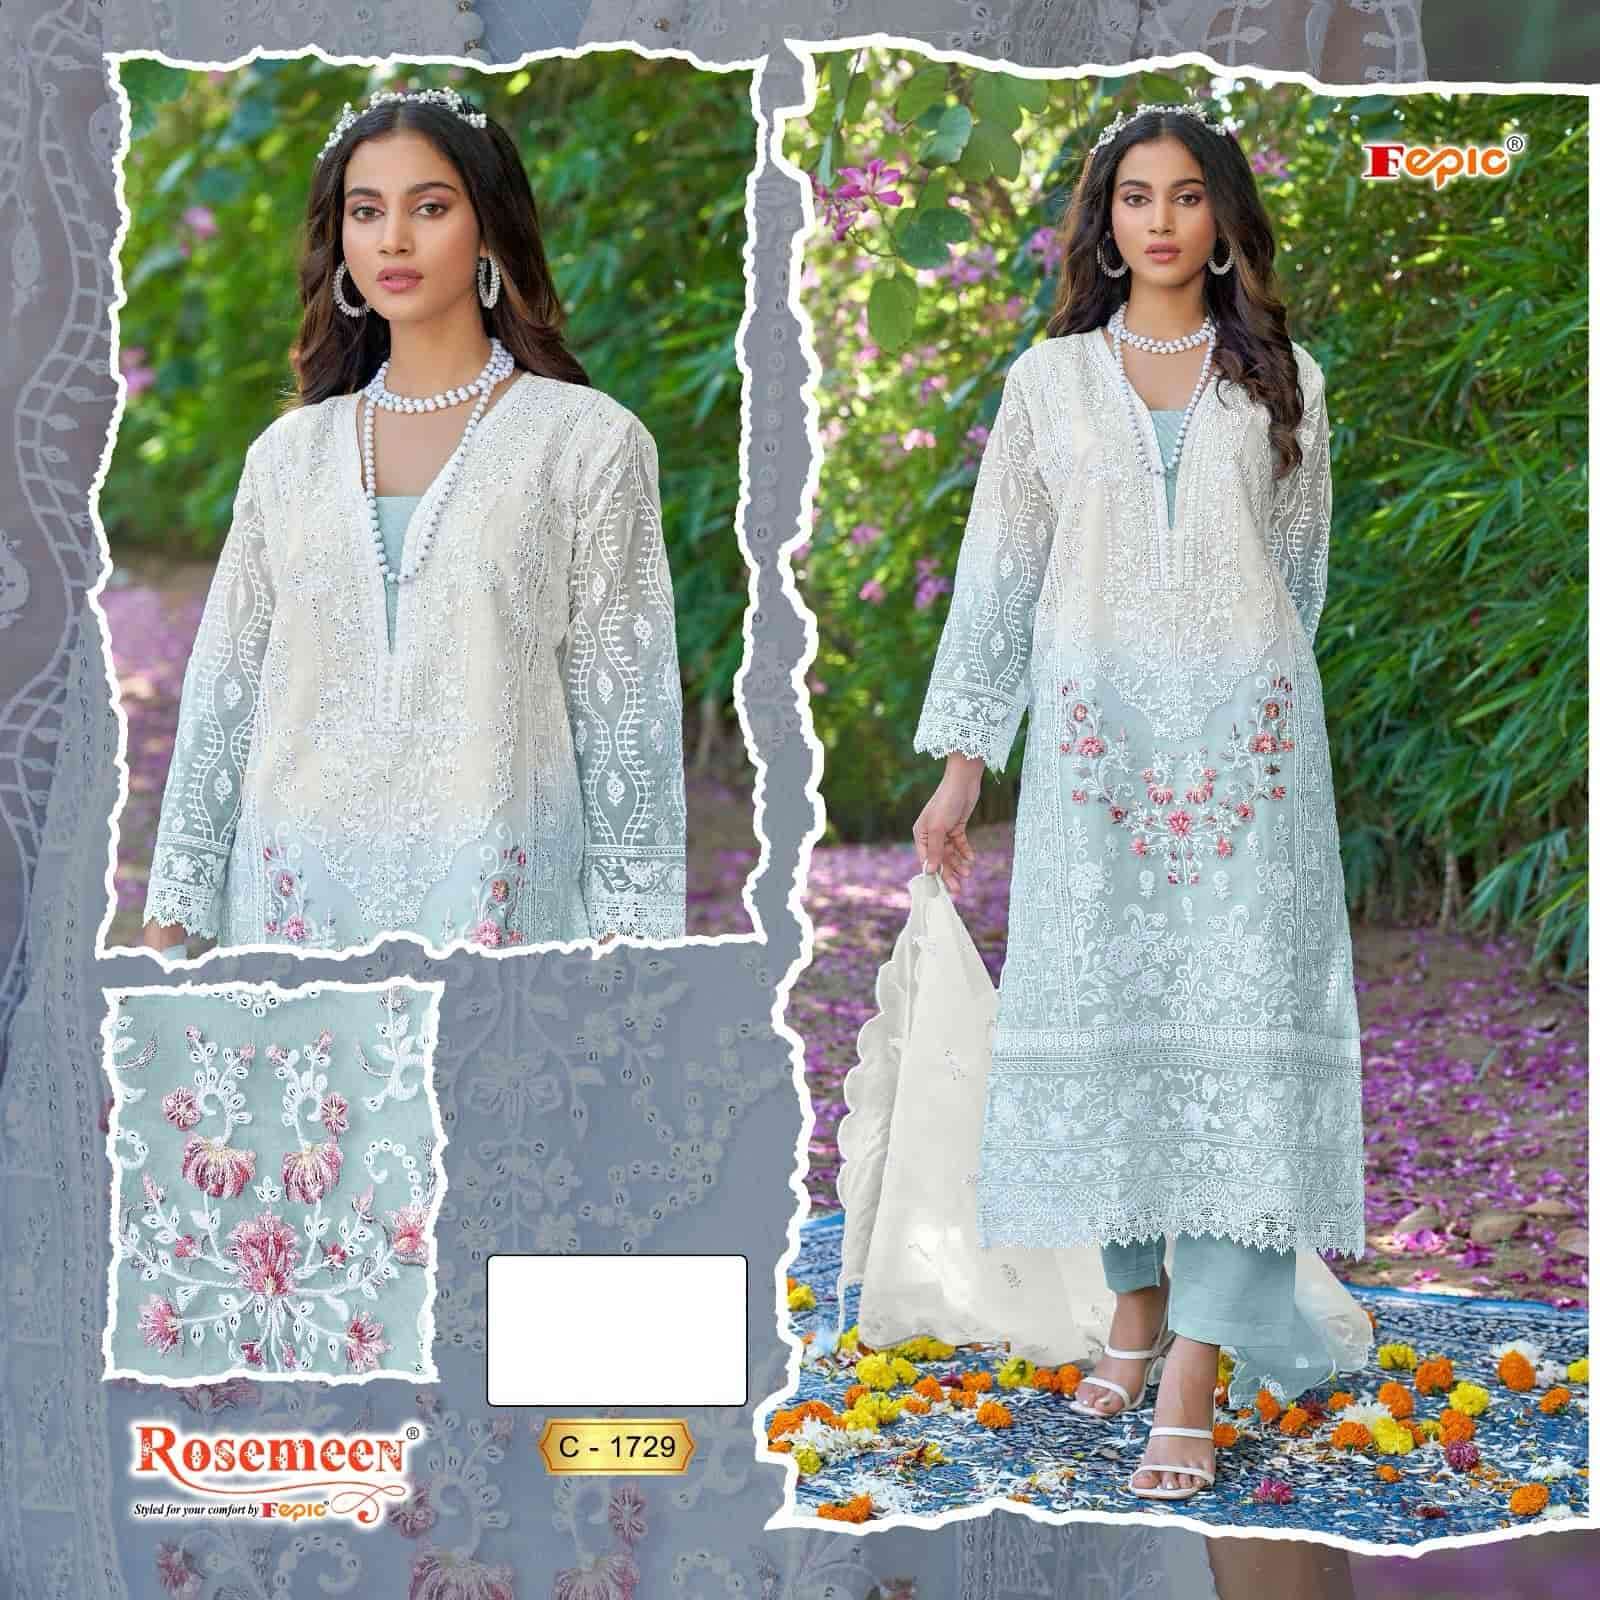 Fepic C 1729 Colors Exclusive Pakistani Dress Unstitch Collection